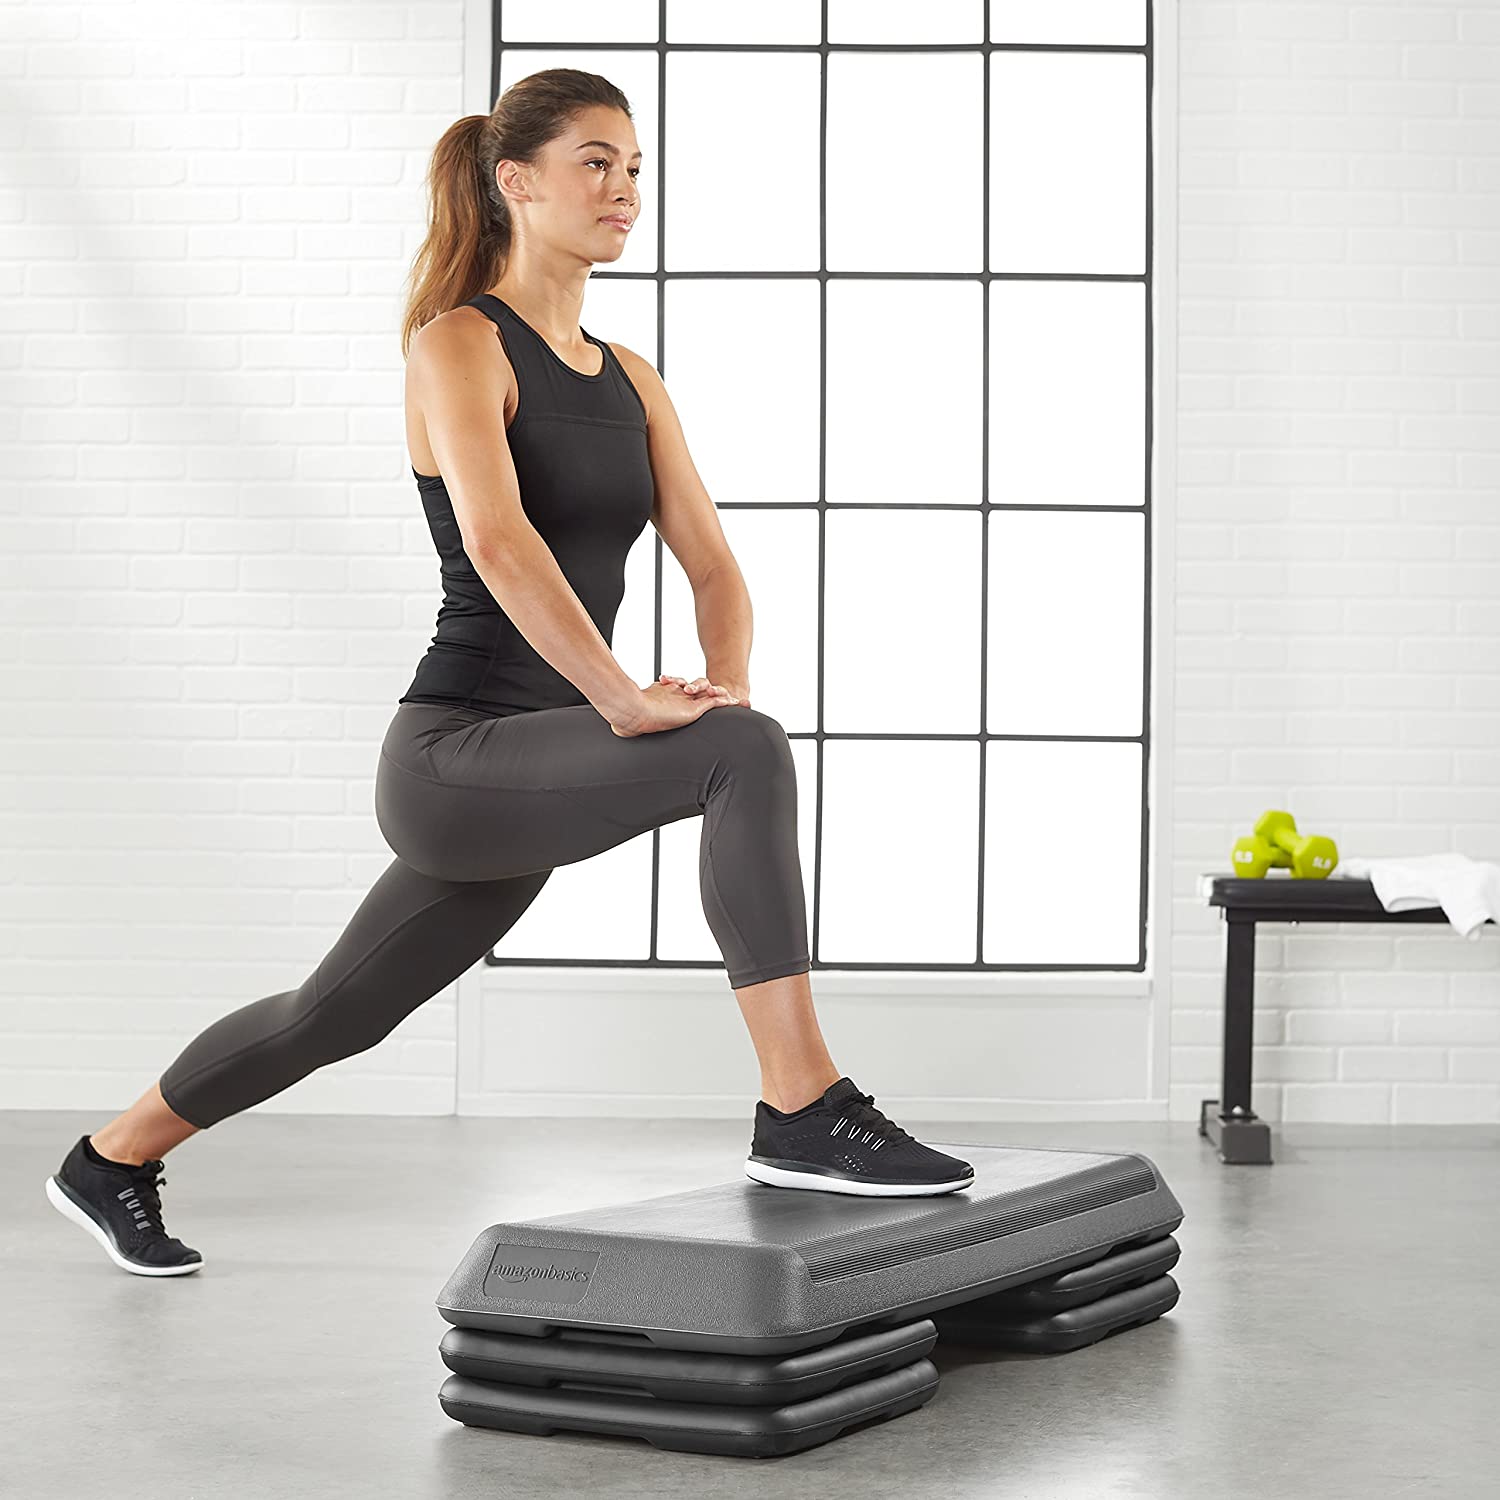 Basics Aerobic Exercise Workout Step Platform with